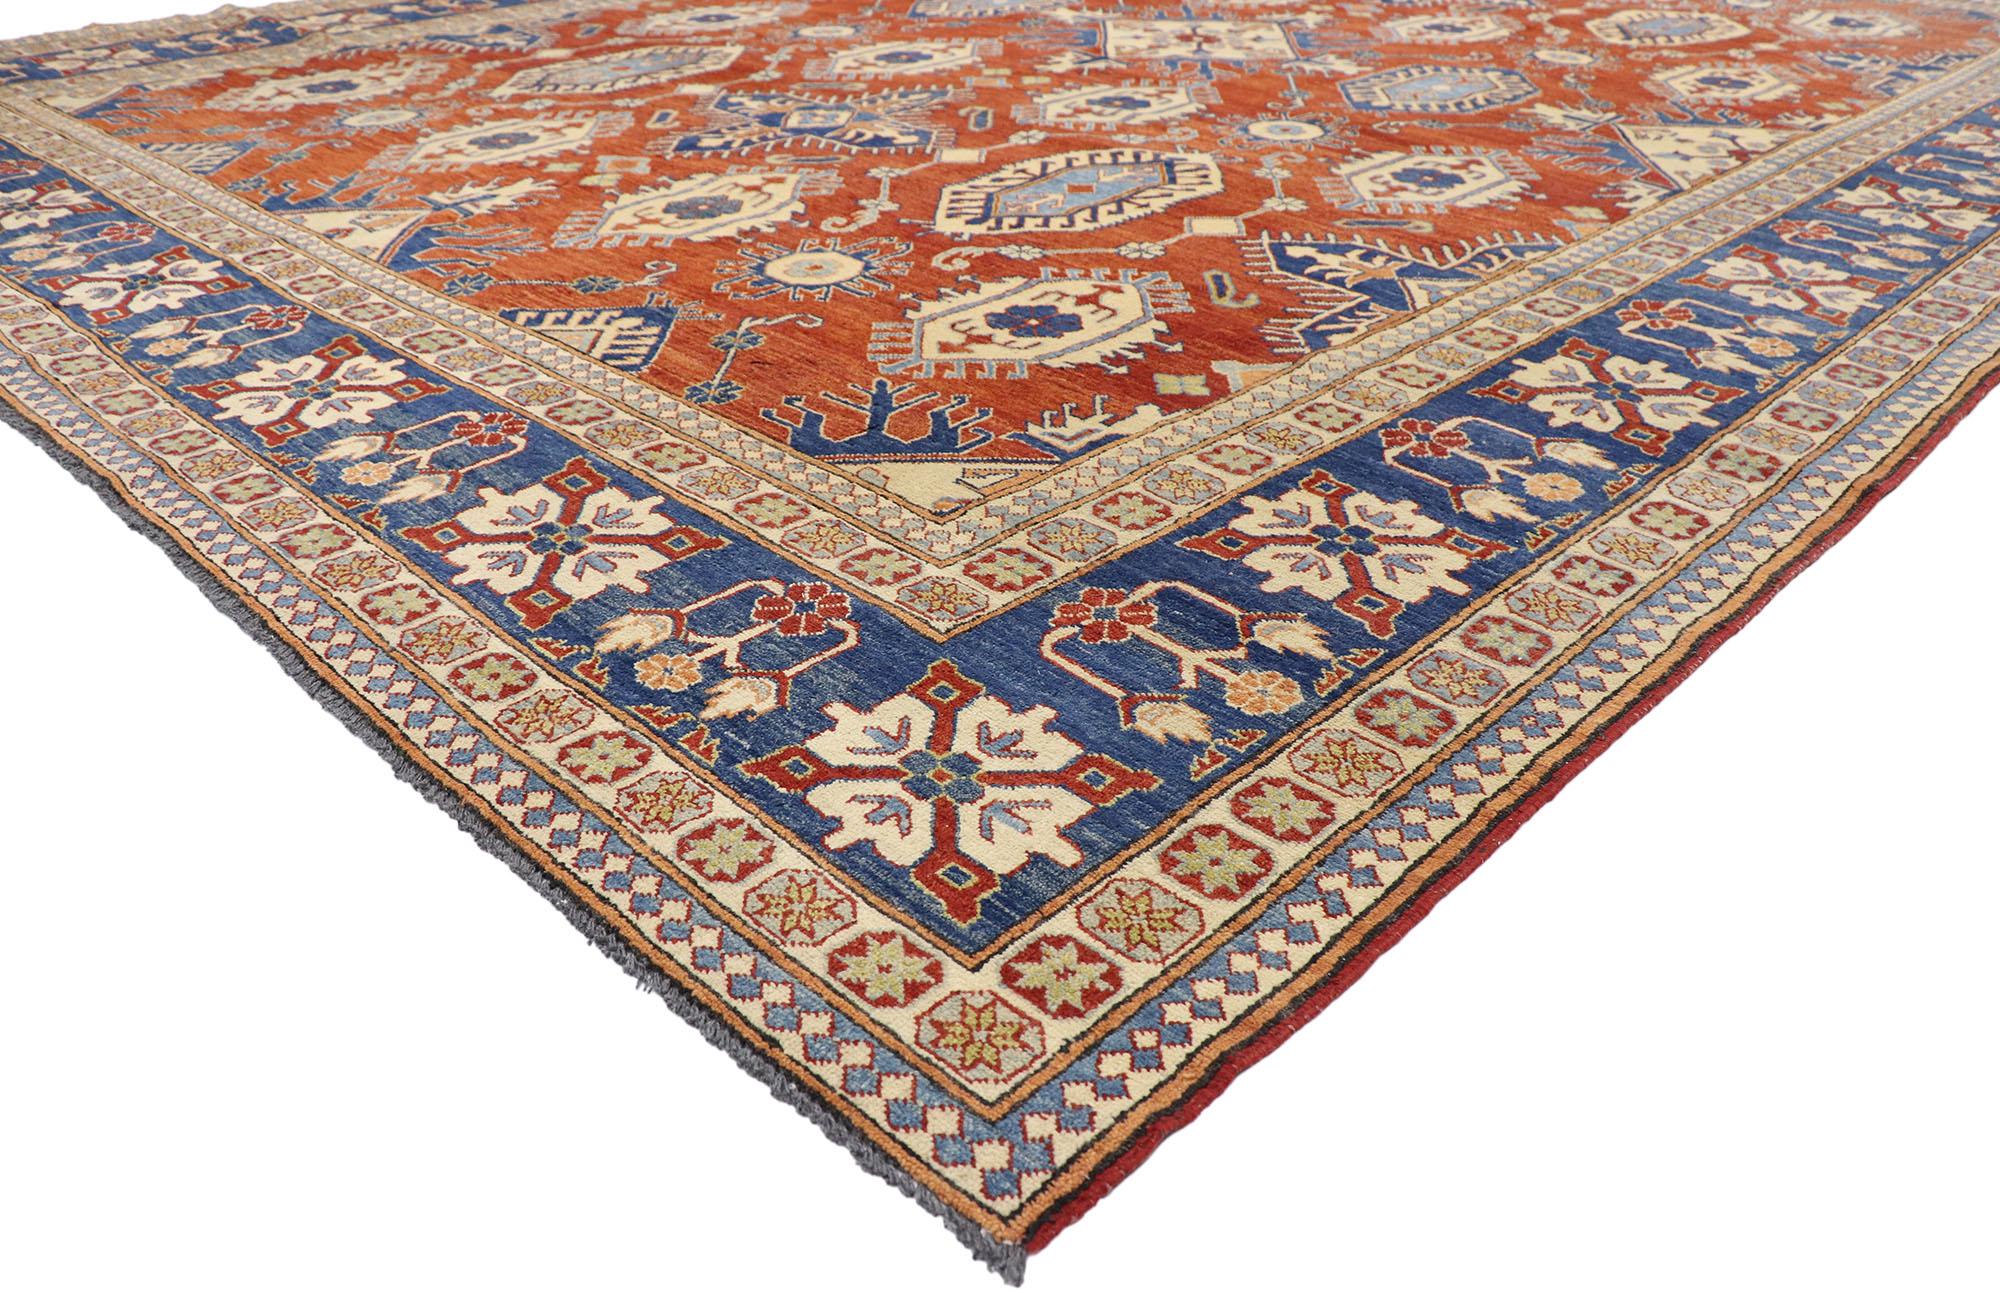 76878, tapis vintage Persan Shiraz Afghani avec style moderne colonial et fédéral 11'09 x 16'03. Traditionnel et majestueux avec ses couleurs éclatantes, ce tapis en laine noué à la main, de style colonial et fédéral, s'intègre parfaitement aux